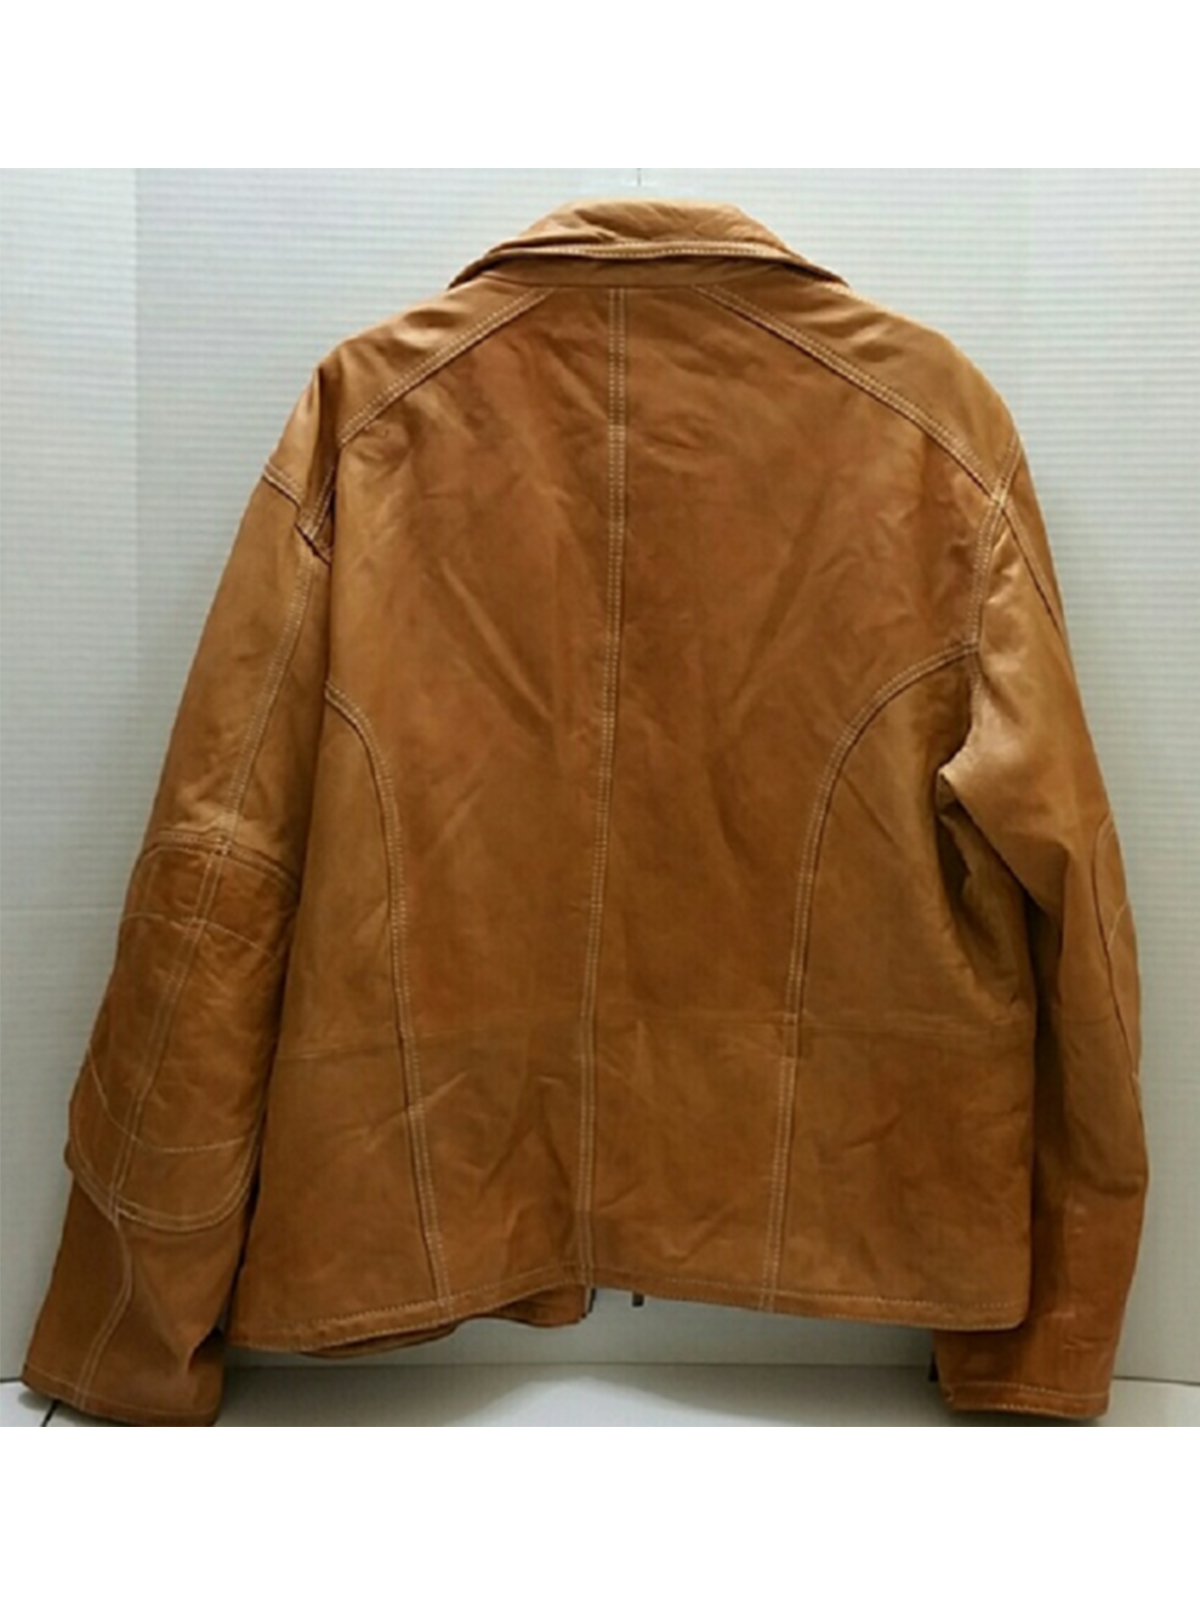 Men’s Robert Comstock Vertical Leather Jacket